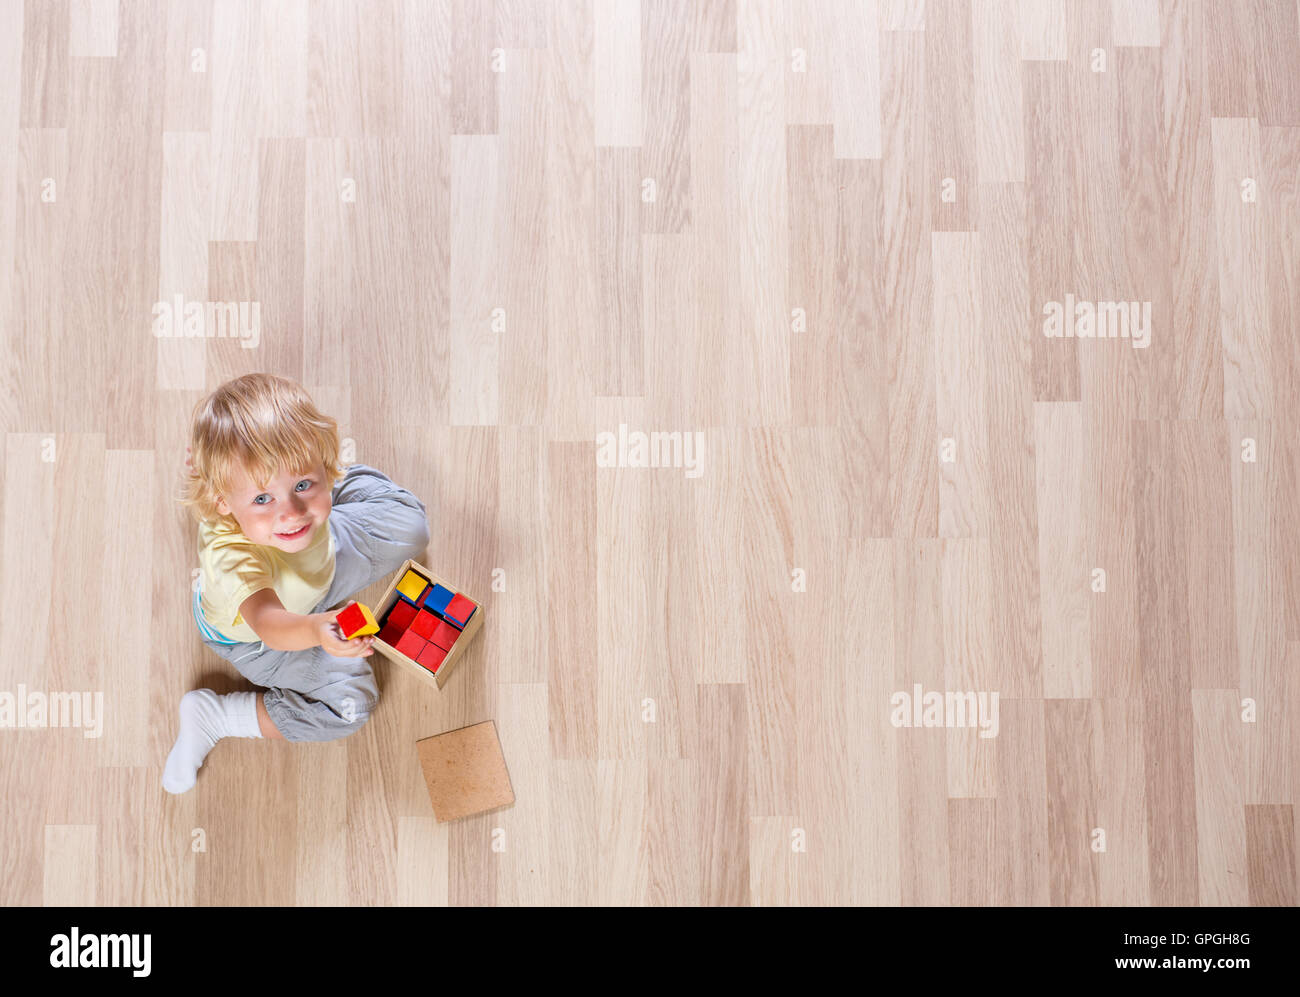 Junge blonde Kind spielen mit bunten Bausteinen Boden Draufsicht Stockfoto